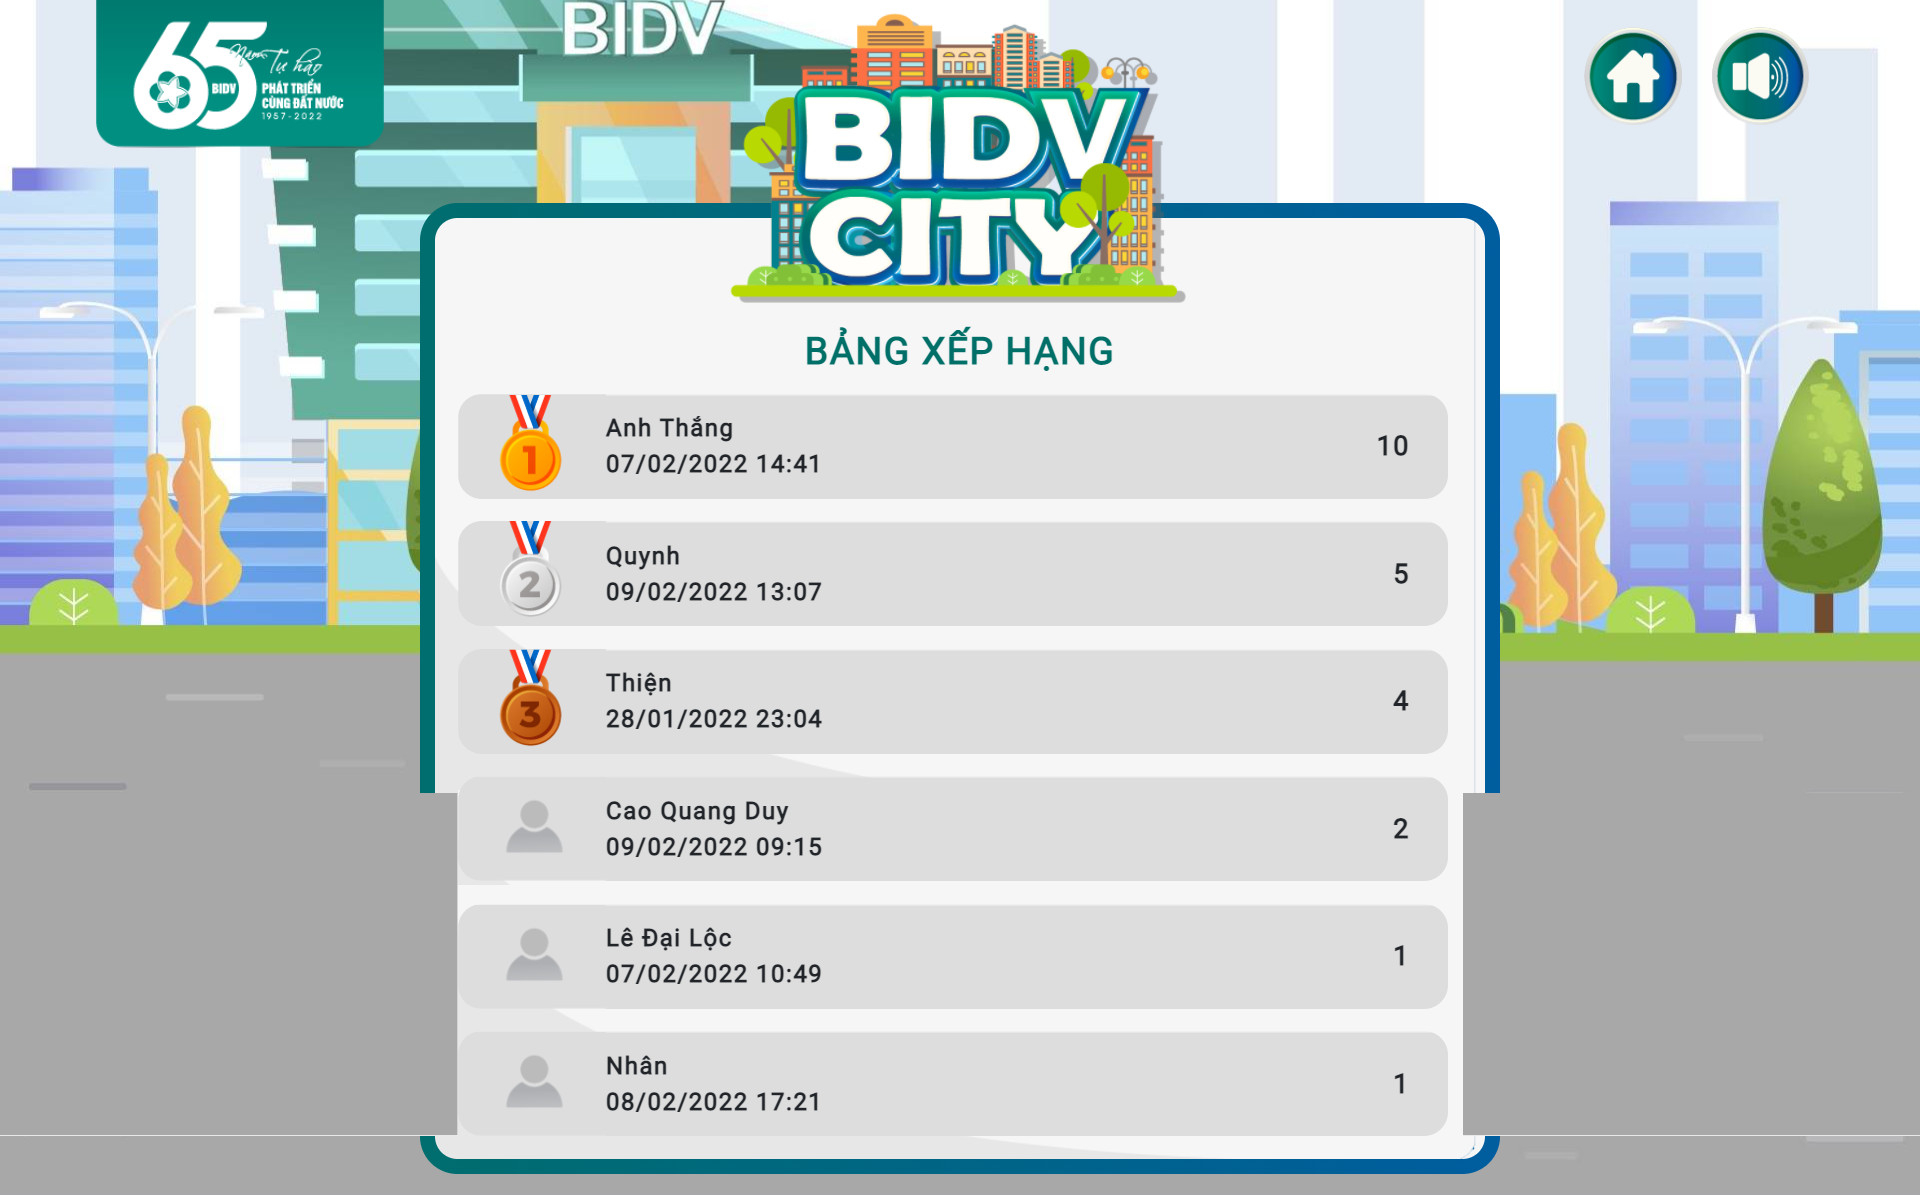 Tài chính - Ngân hàng - “BIDV City”: Khám phá thành phố thông minh, trúng quà tiền tỷ (Hình 4).